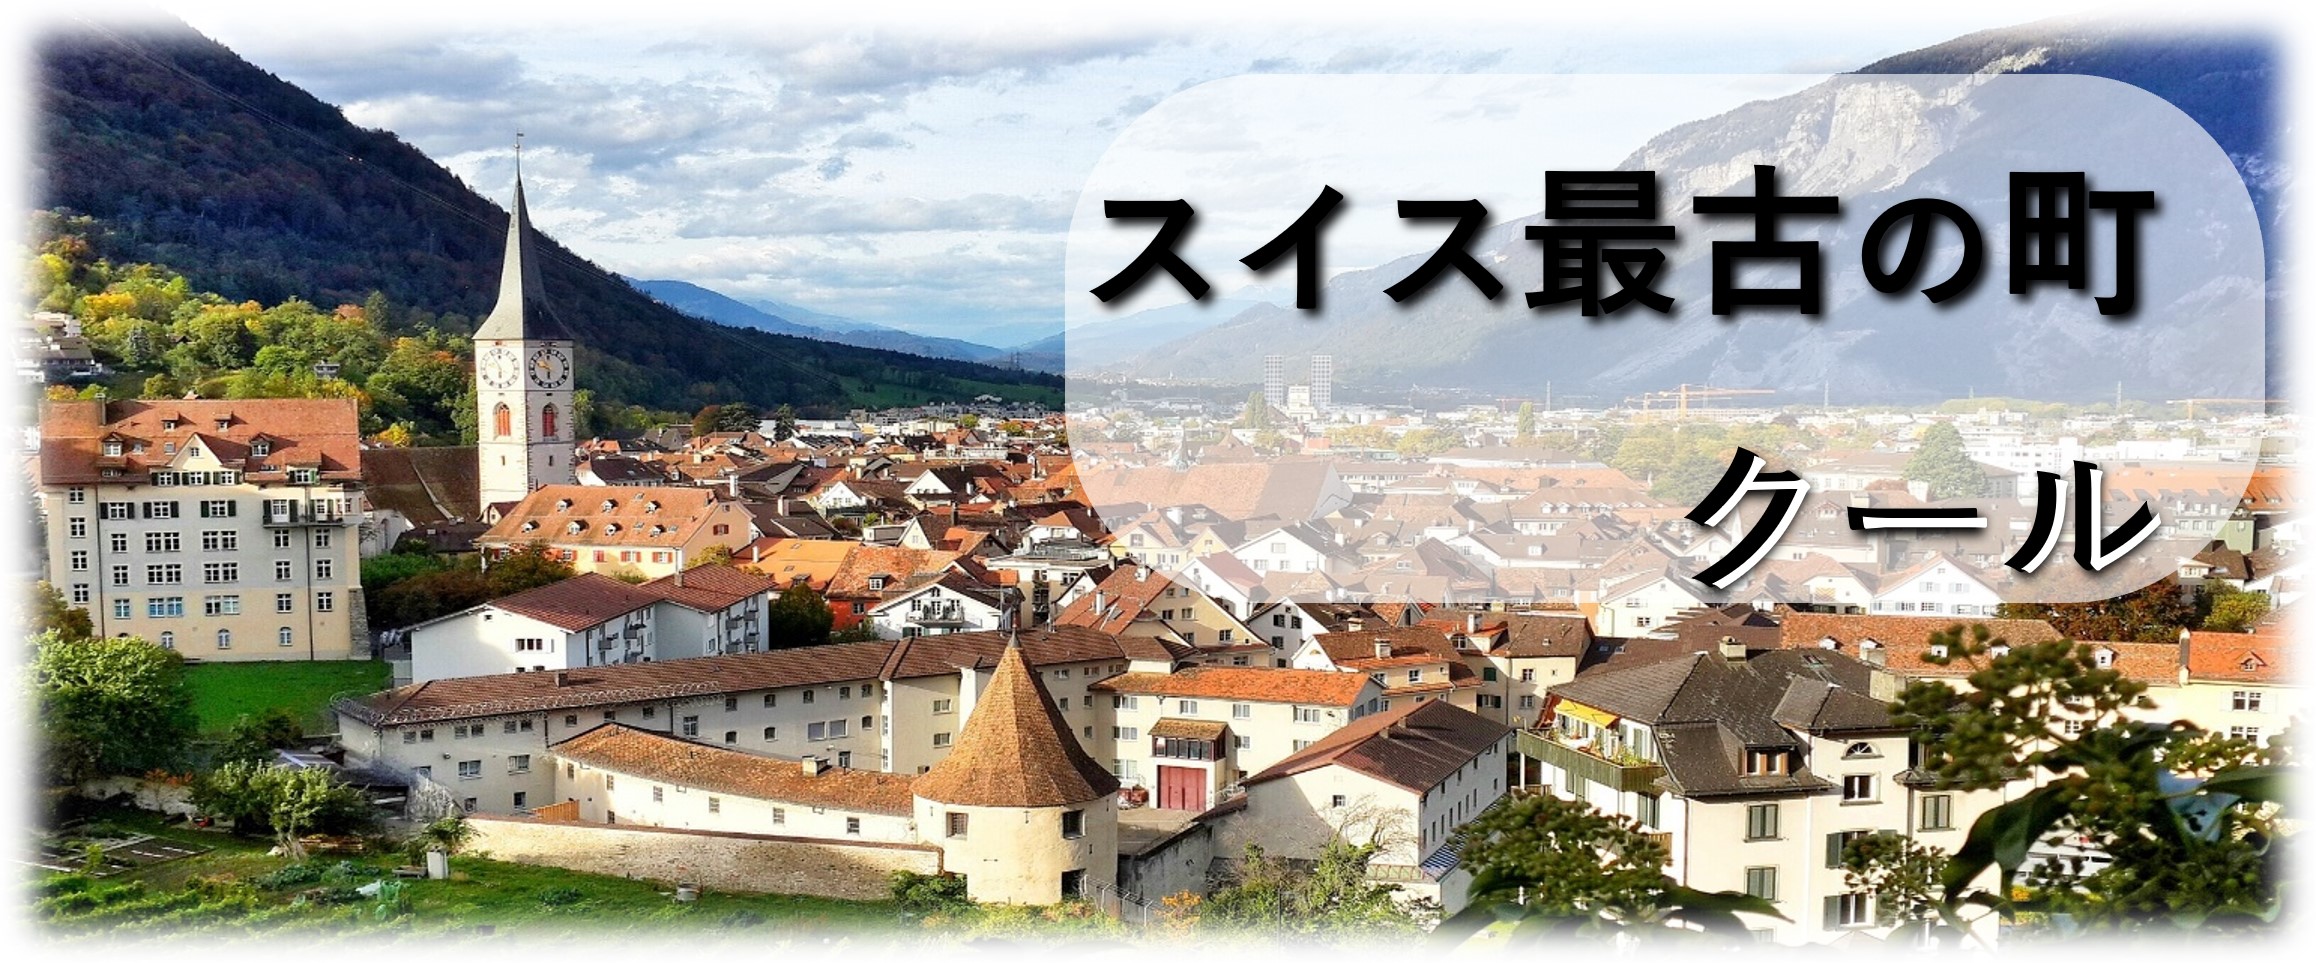 スイス最古の町クール – トランスユーロアカデミー